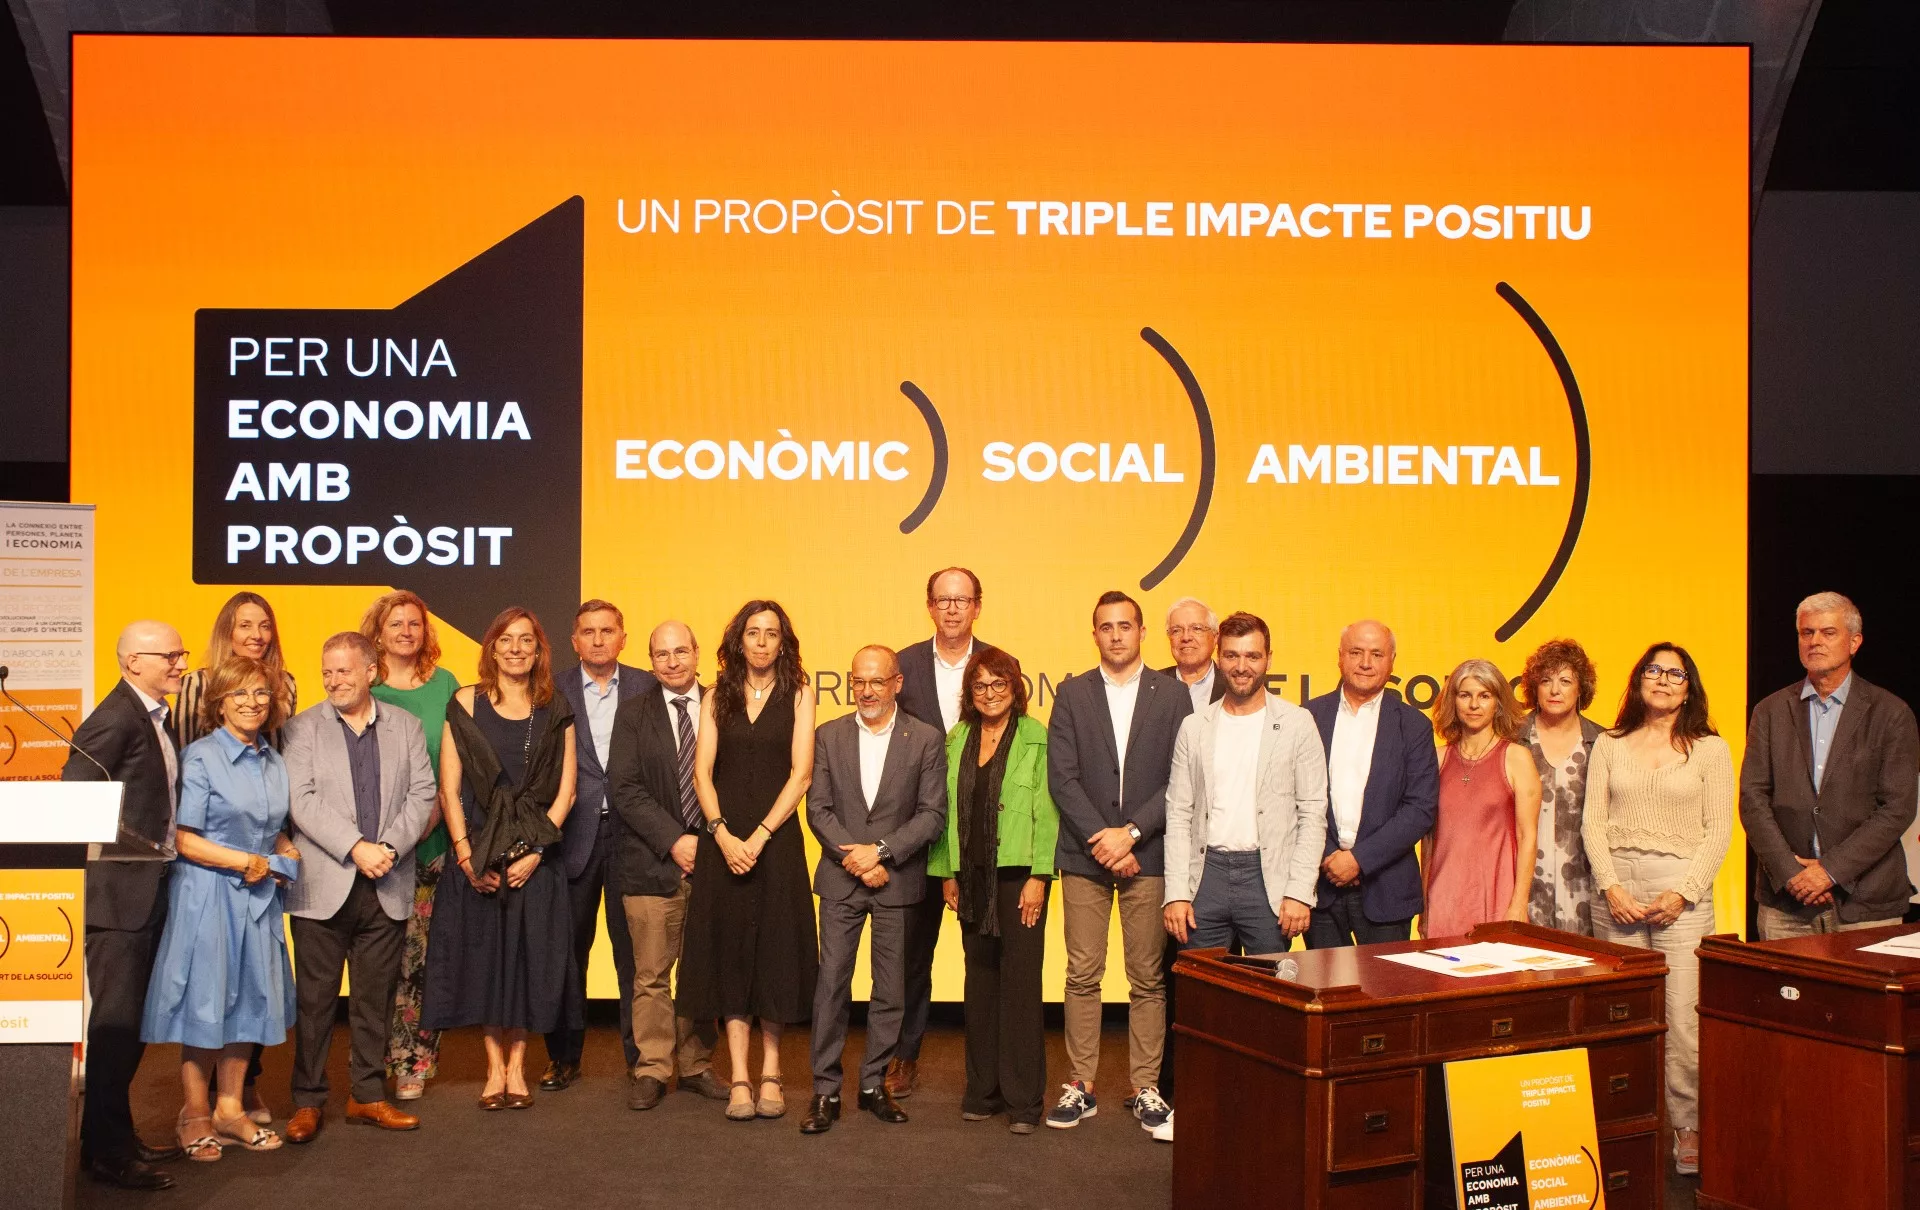 Més de 200 empreses catalanes es comprometen a impulsar una economia amb propòsit